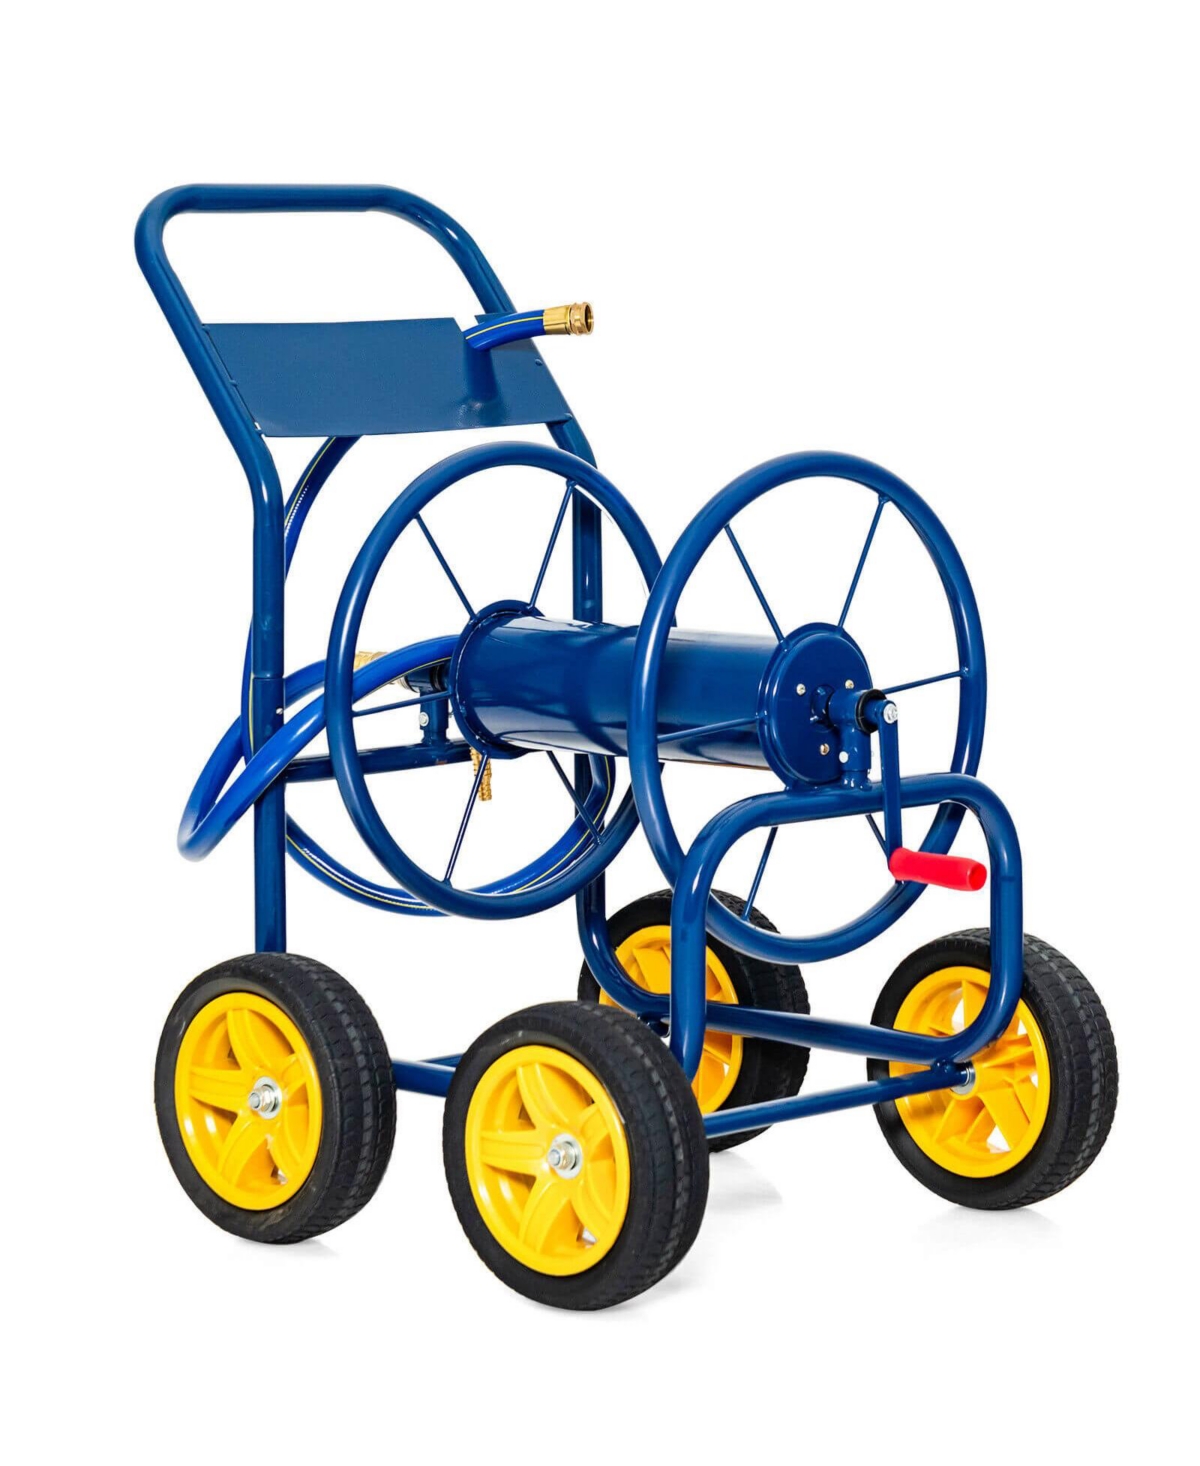 Garden Hose Reel Cart Holds 330ft of 3/4 Inch or 5/8 Inch Hose - Blue